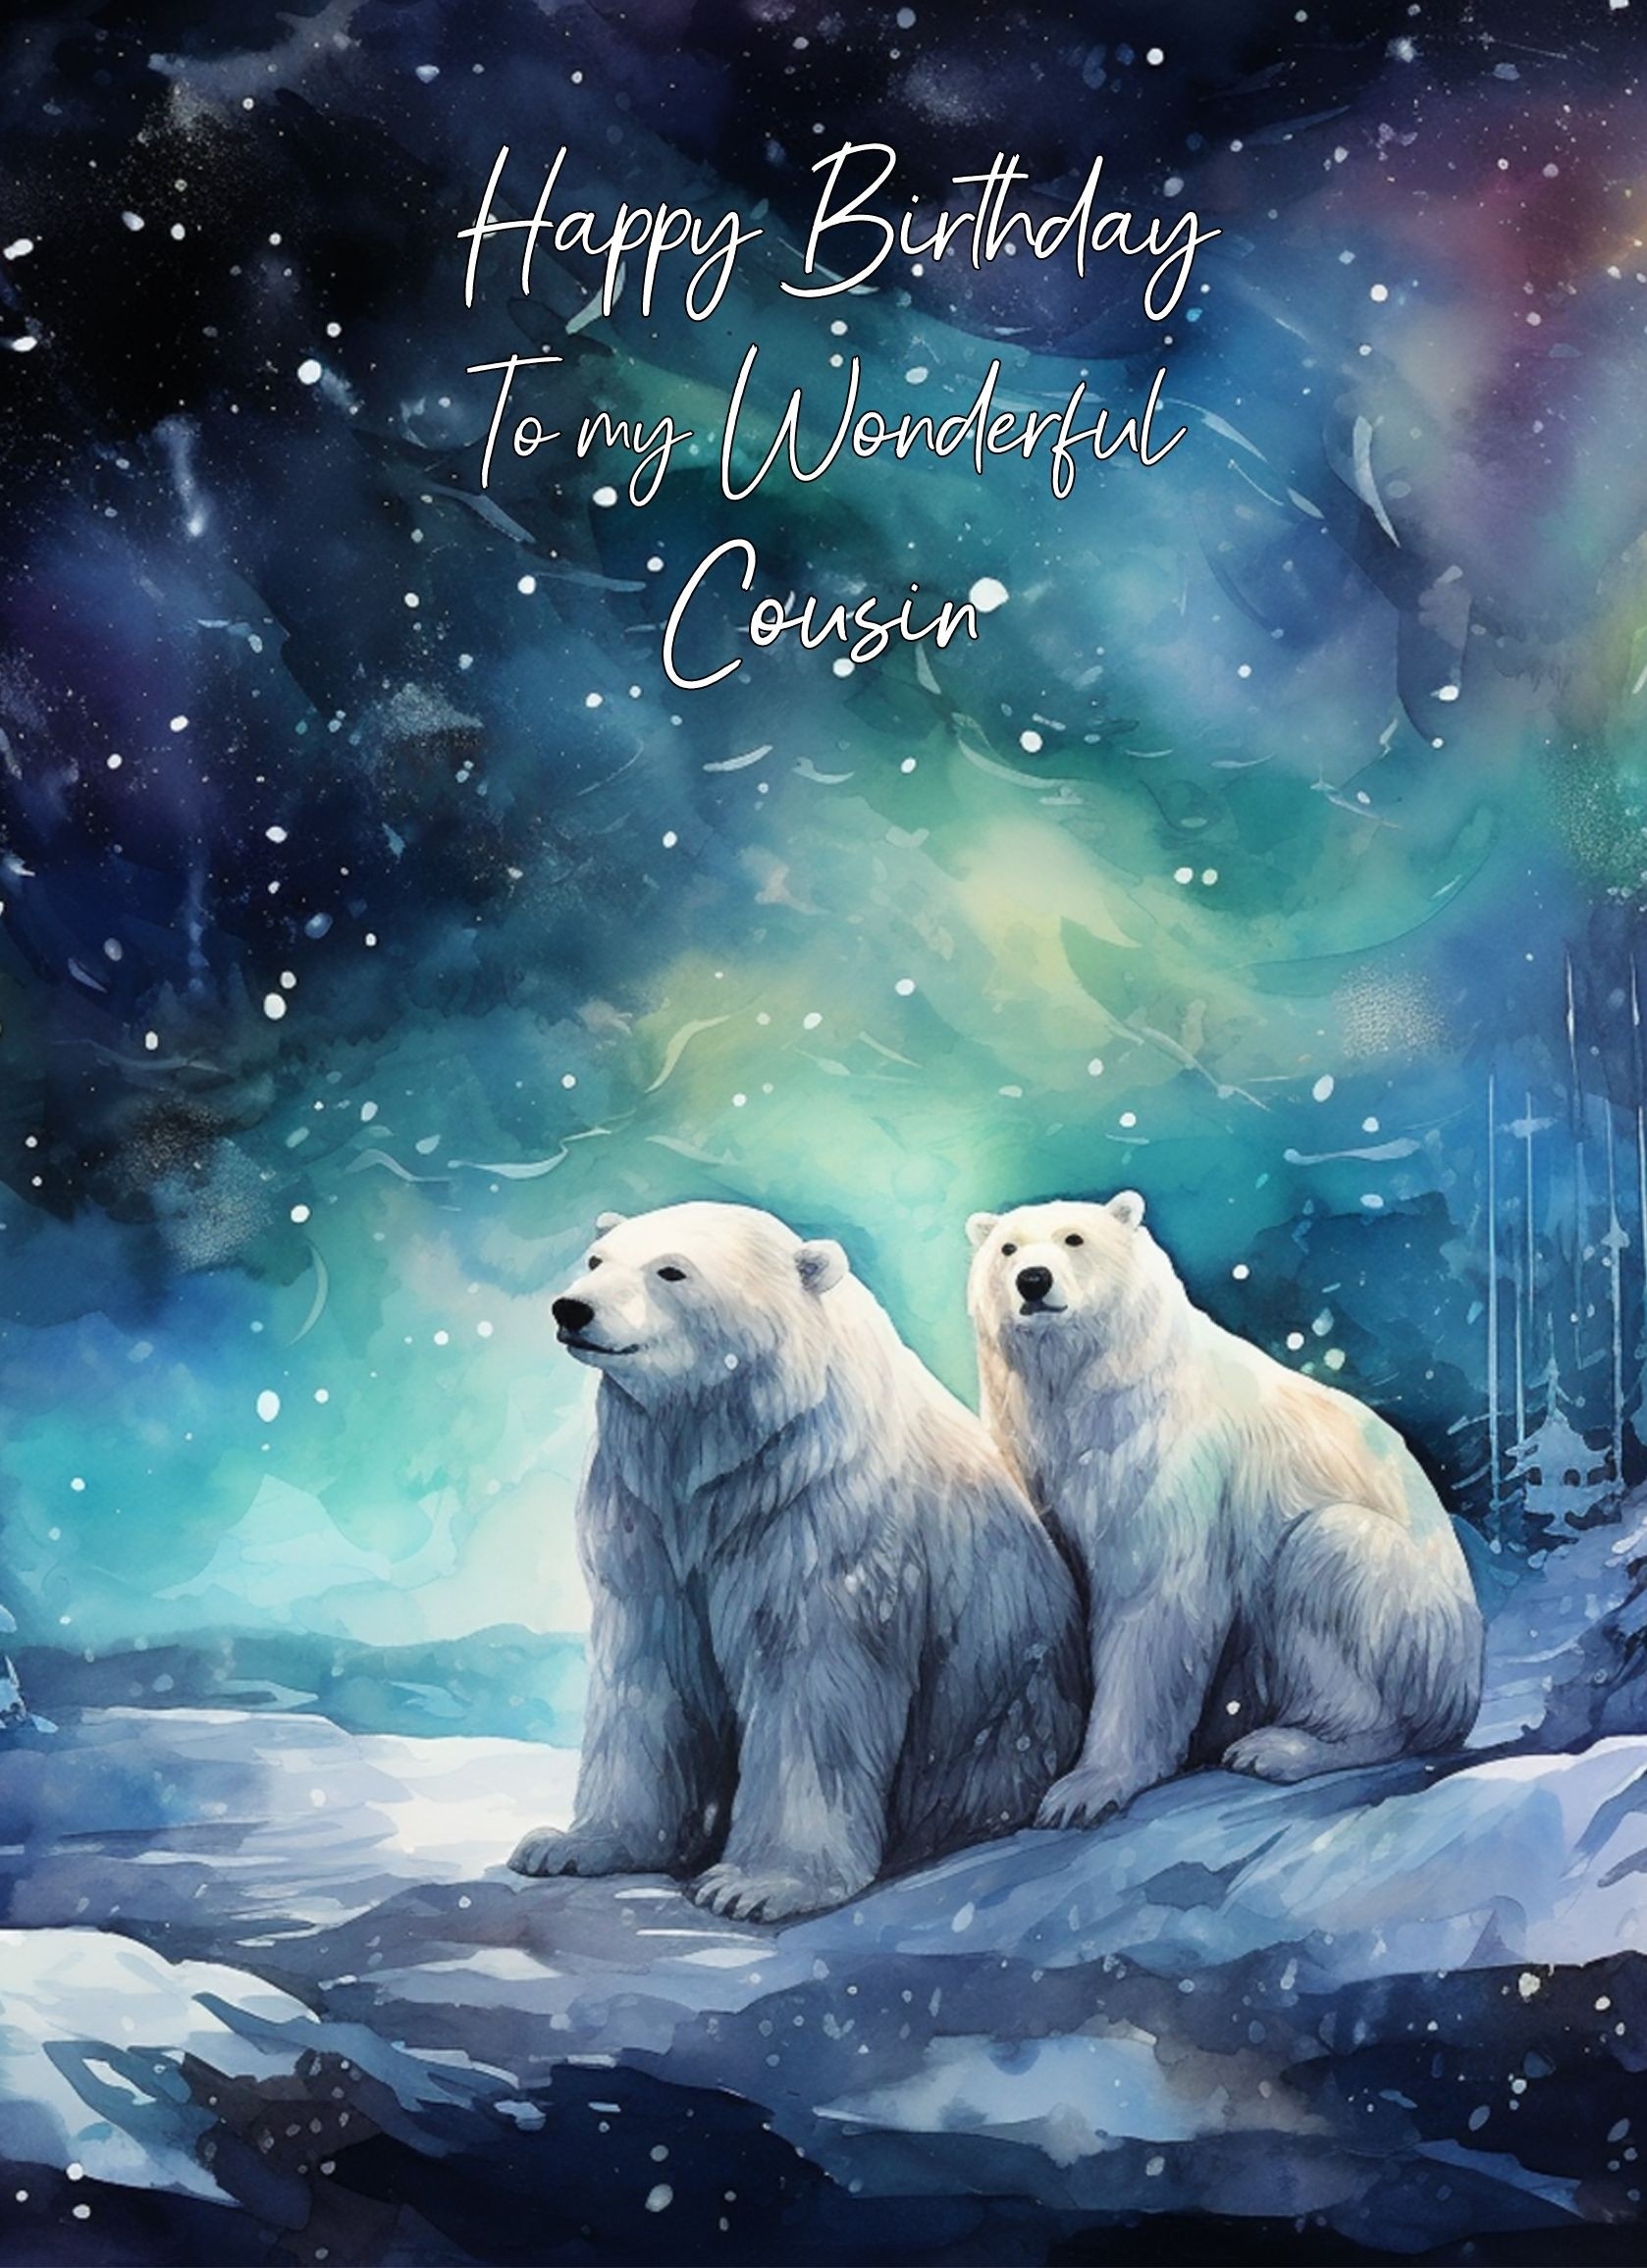 Polar Bear Art Birthday Card For Cousin (Design 5)